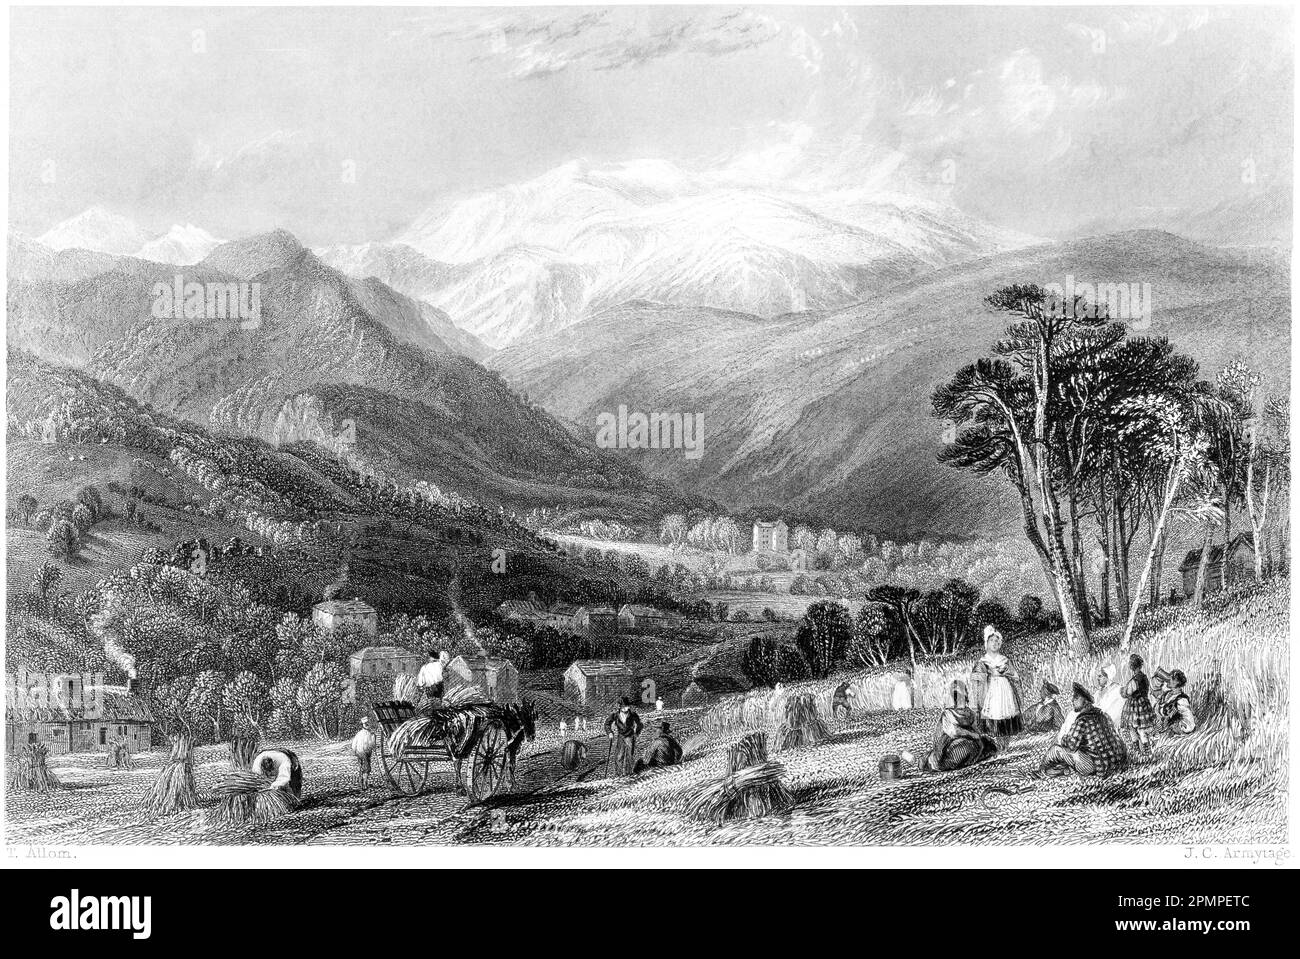 Une gravure de Strathpeffer Mineral Wells, Ross-shire, Écosse, Royaume-Uni a scanné à haute résolution à partir d'un livre imprimé en 1840. Banque D'Images